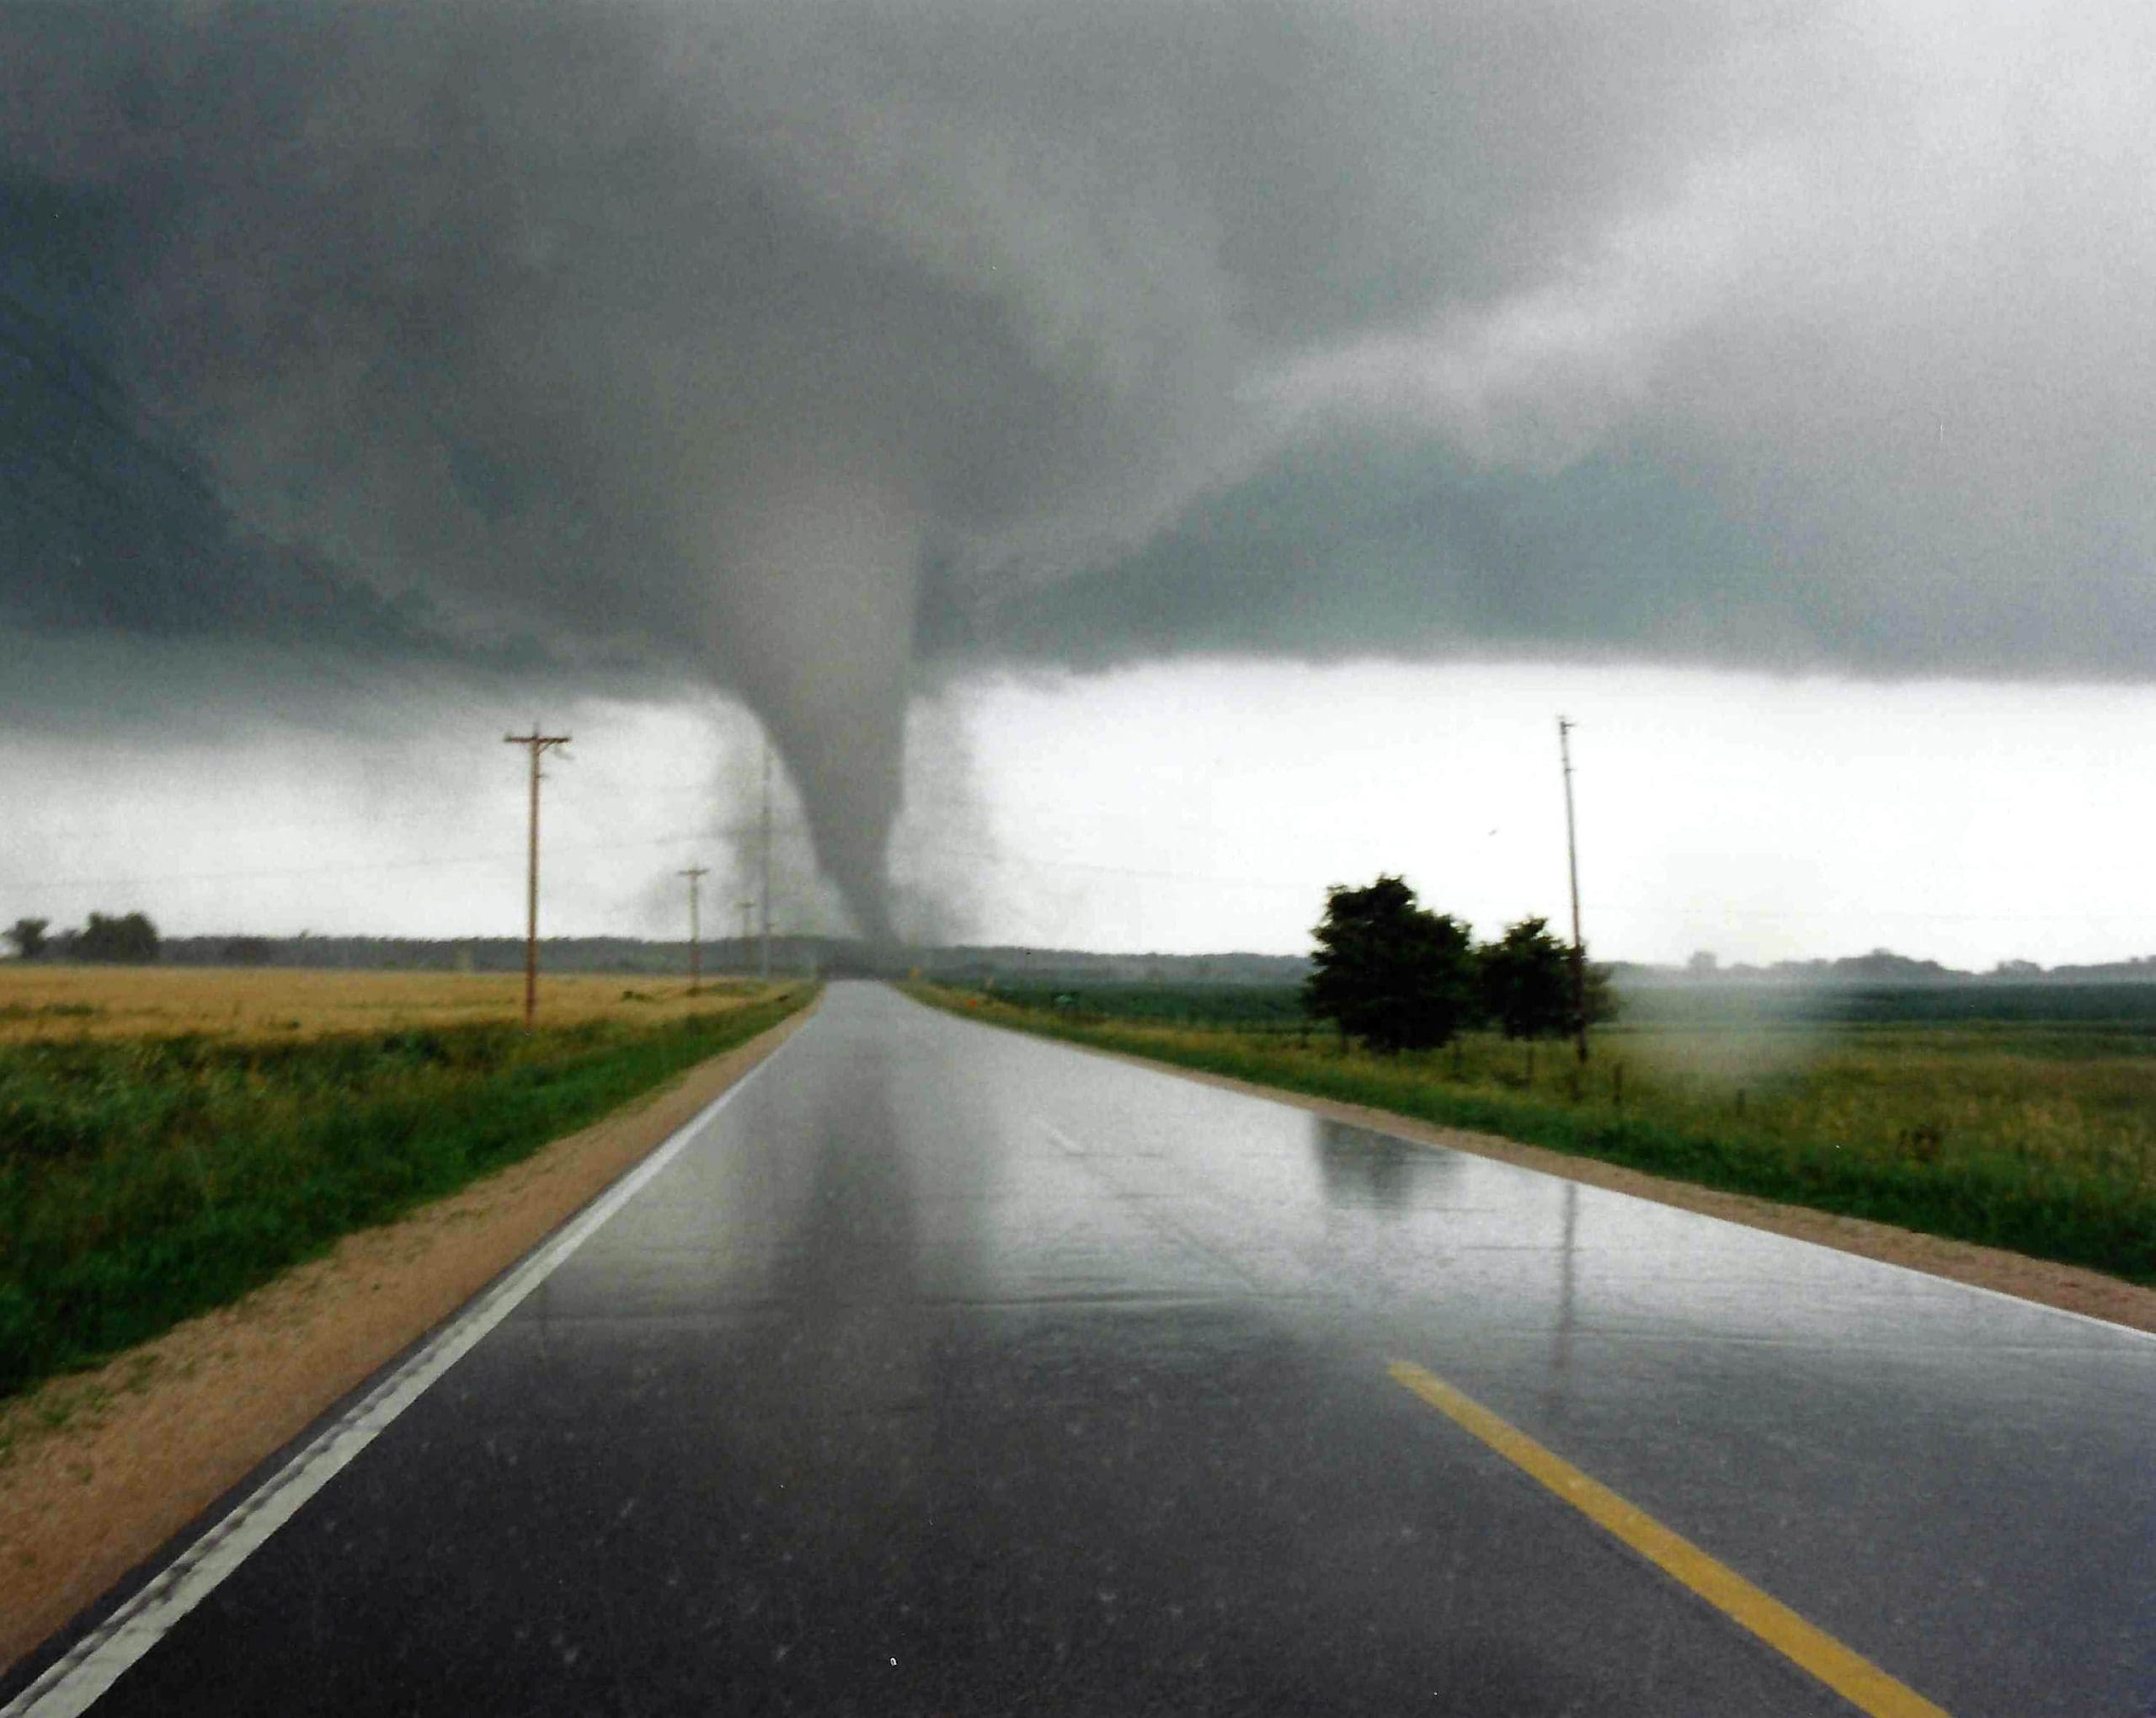 Tornado at end of long road